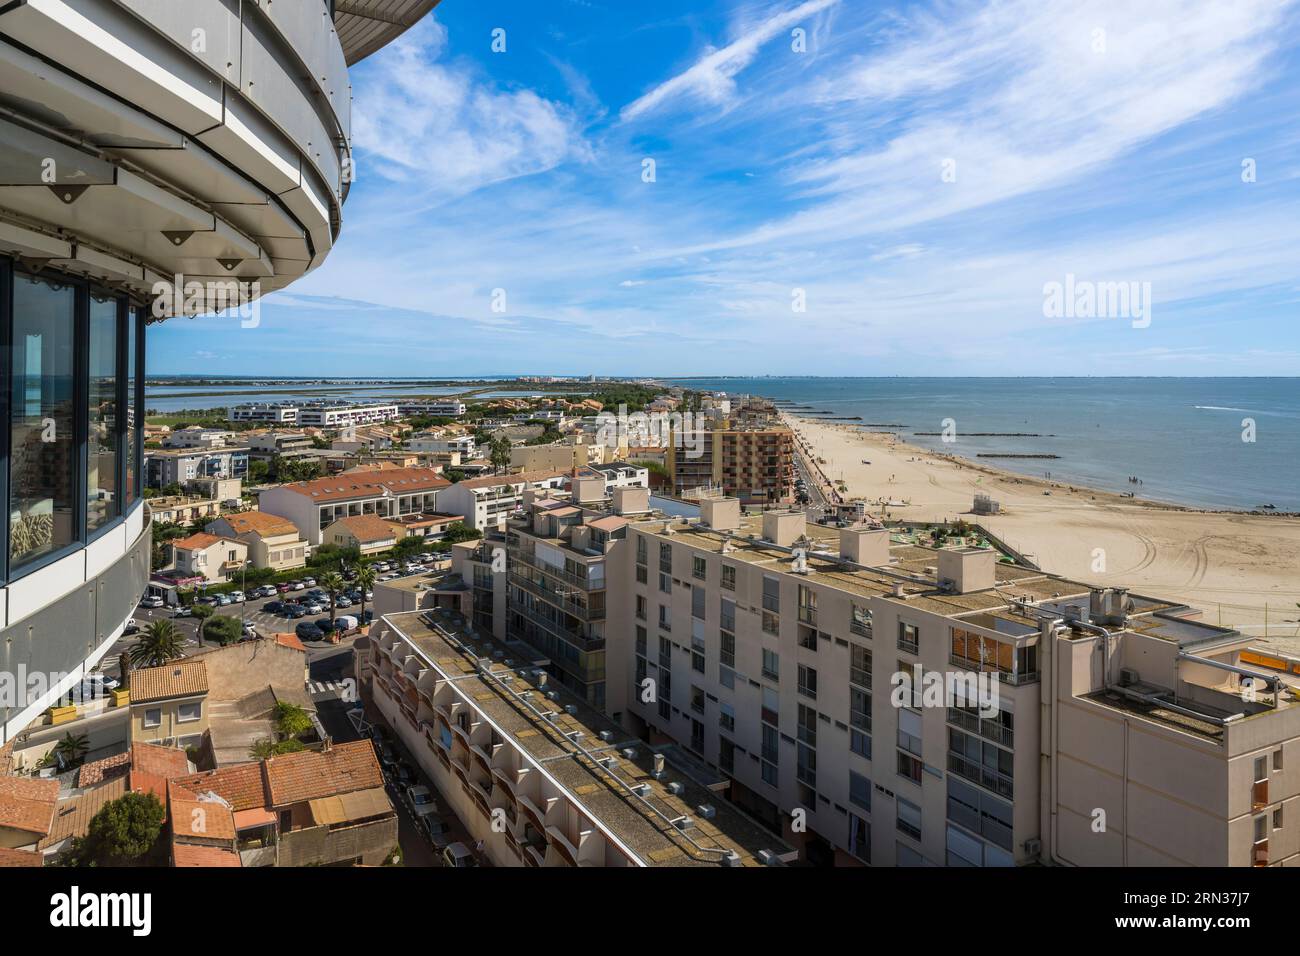 Frankreich, Herault, Palavas-Les-Flots, die Stadt vom Phare de la Méditerranée (Leuchtturm des Mittelmeers) aus gesehen, Aussichtsturm von 43 Metern, der aus der Umwandlung des alten Wasserturms resultiert Stockfoto